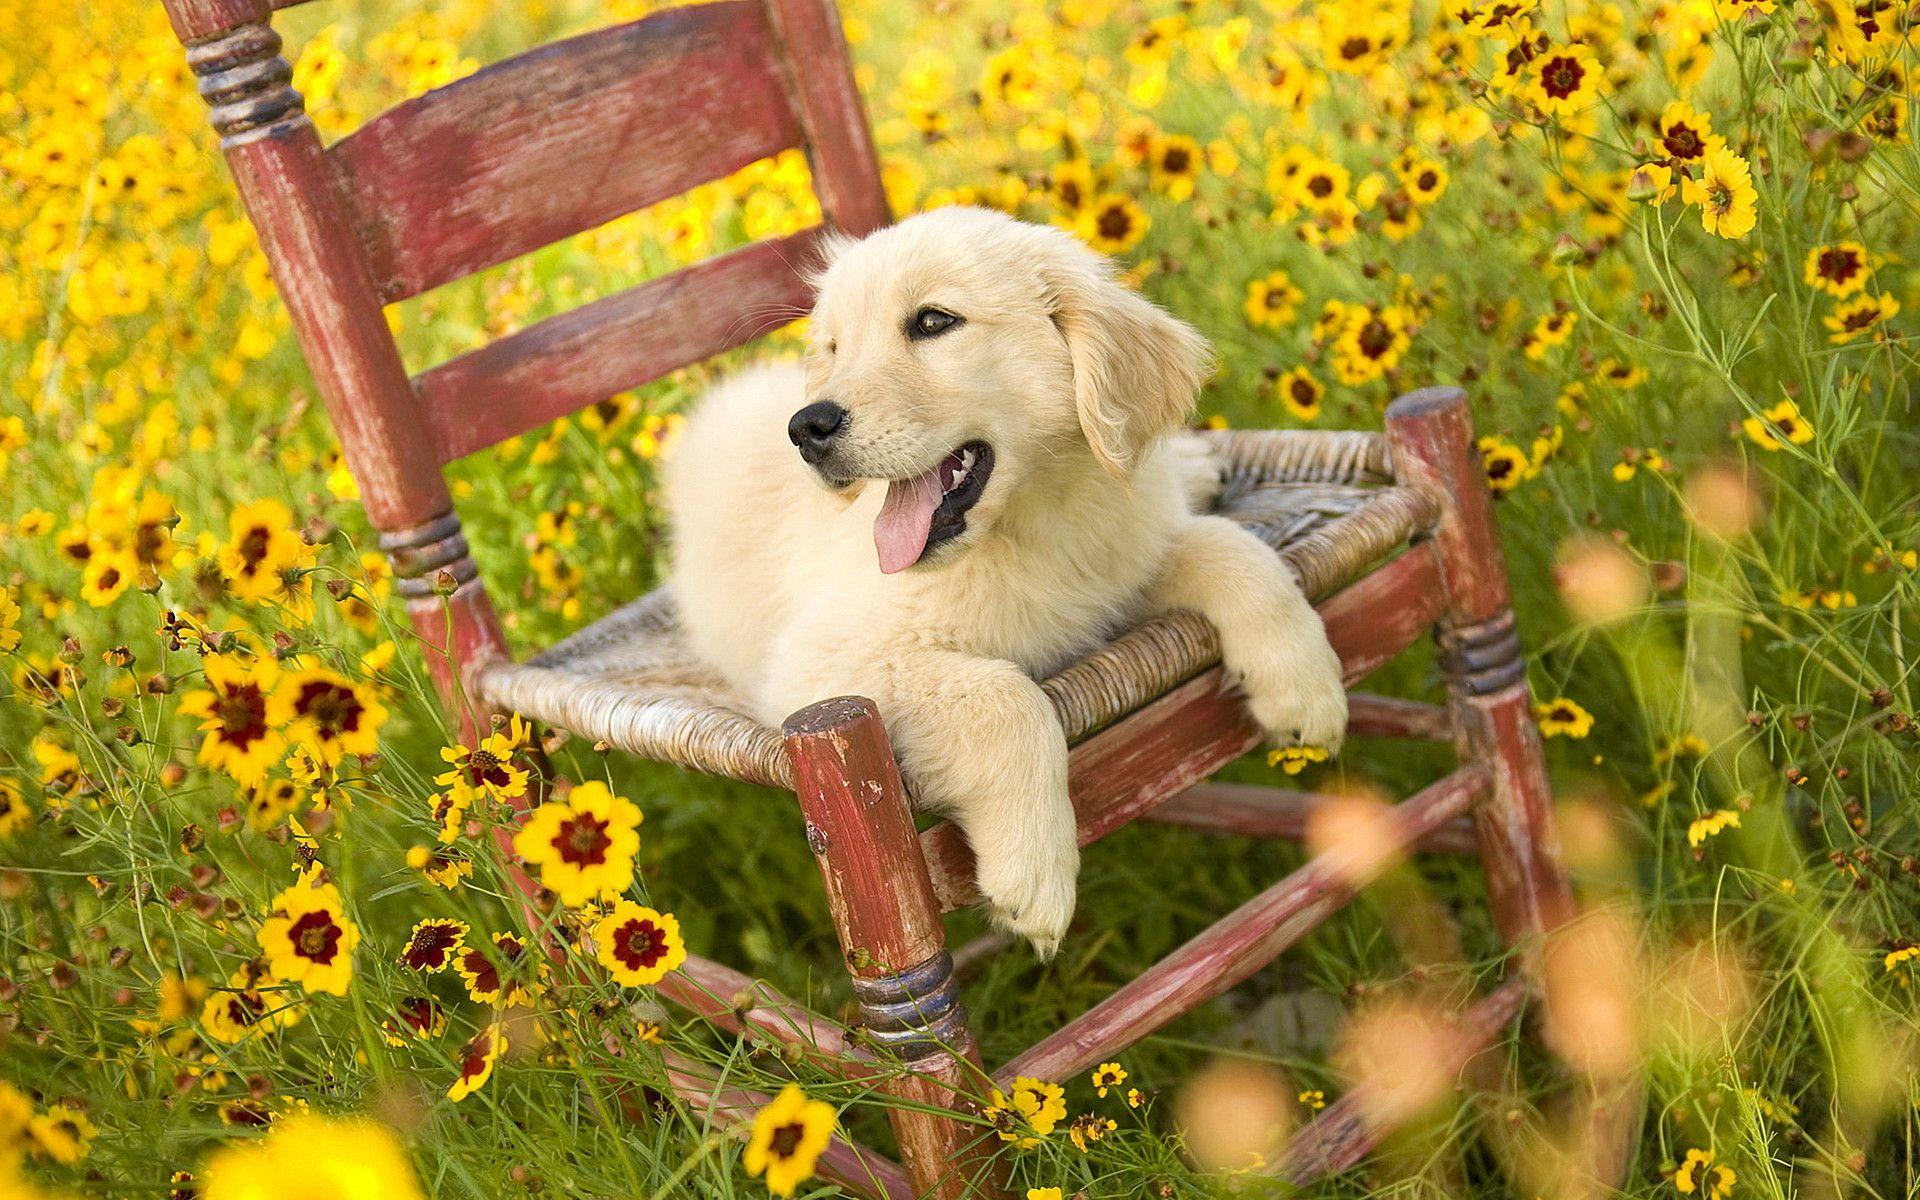 Nền chó cưng mùa hè là một hình ảnh tươi sáng và vui nhộn, mang lại cho bạn cảm giác dễ chịu khi nhìn vào. Được thêu vào màn hình điện thoại của bạn, chúng sẽ giúp bạn cảm thấy như đang ở trên một bãi biển xinh đẹp.